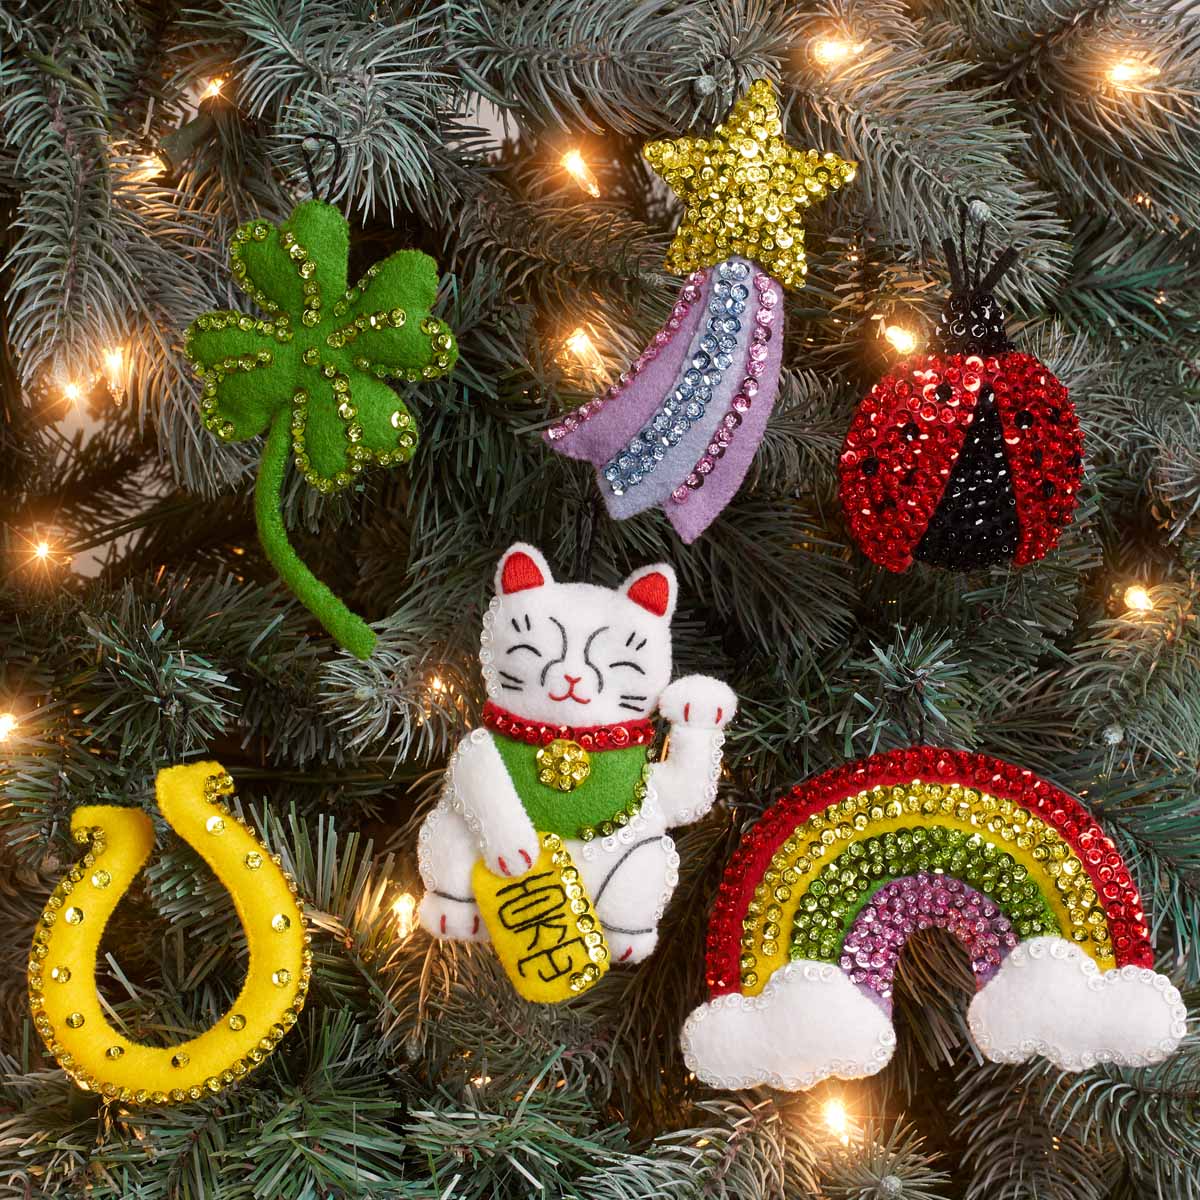 Bucilla ® Seasonal - Felt - Ornament Kits - Feeling Lucky - 89277E